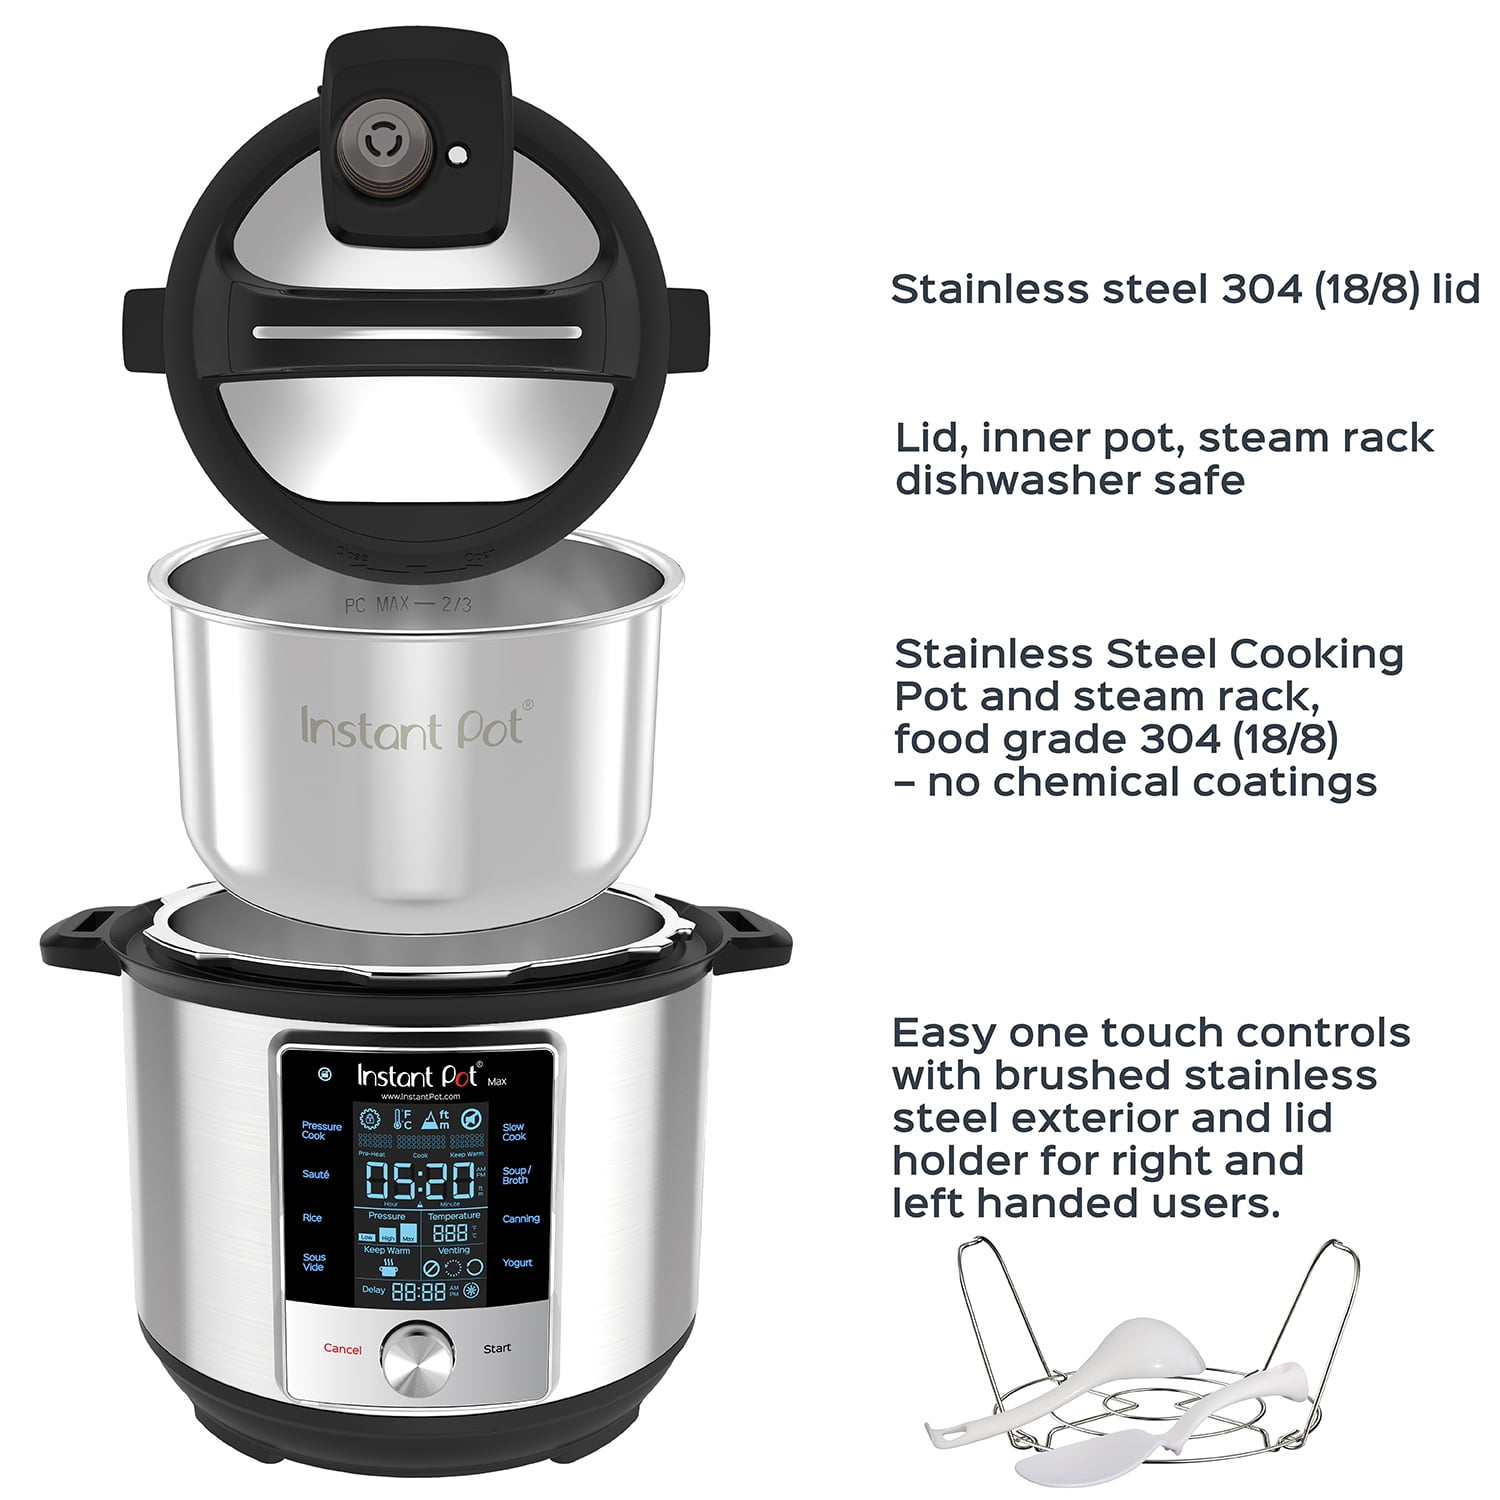 Instant Pot Max 6Qt. Multi-Cooker Review - Consumer Reports